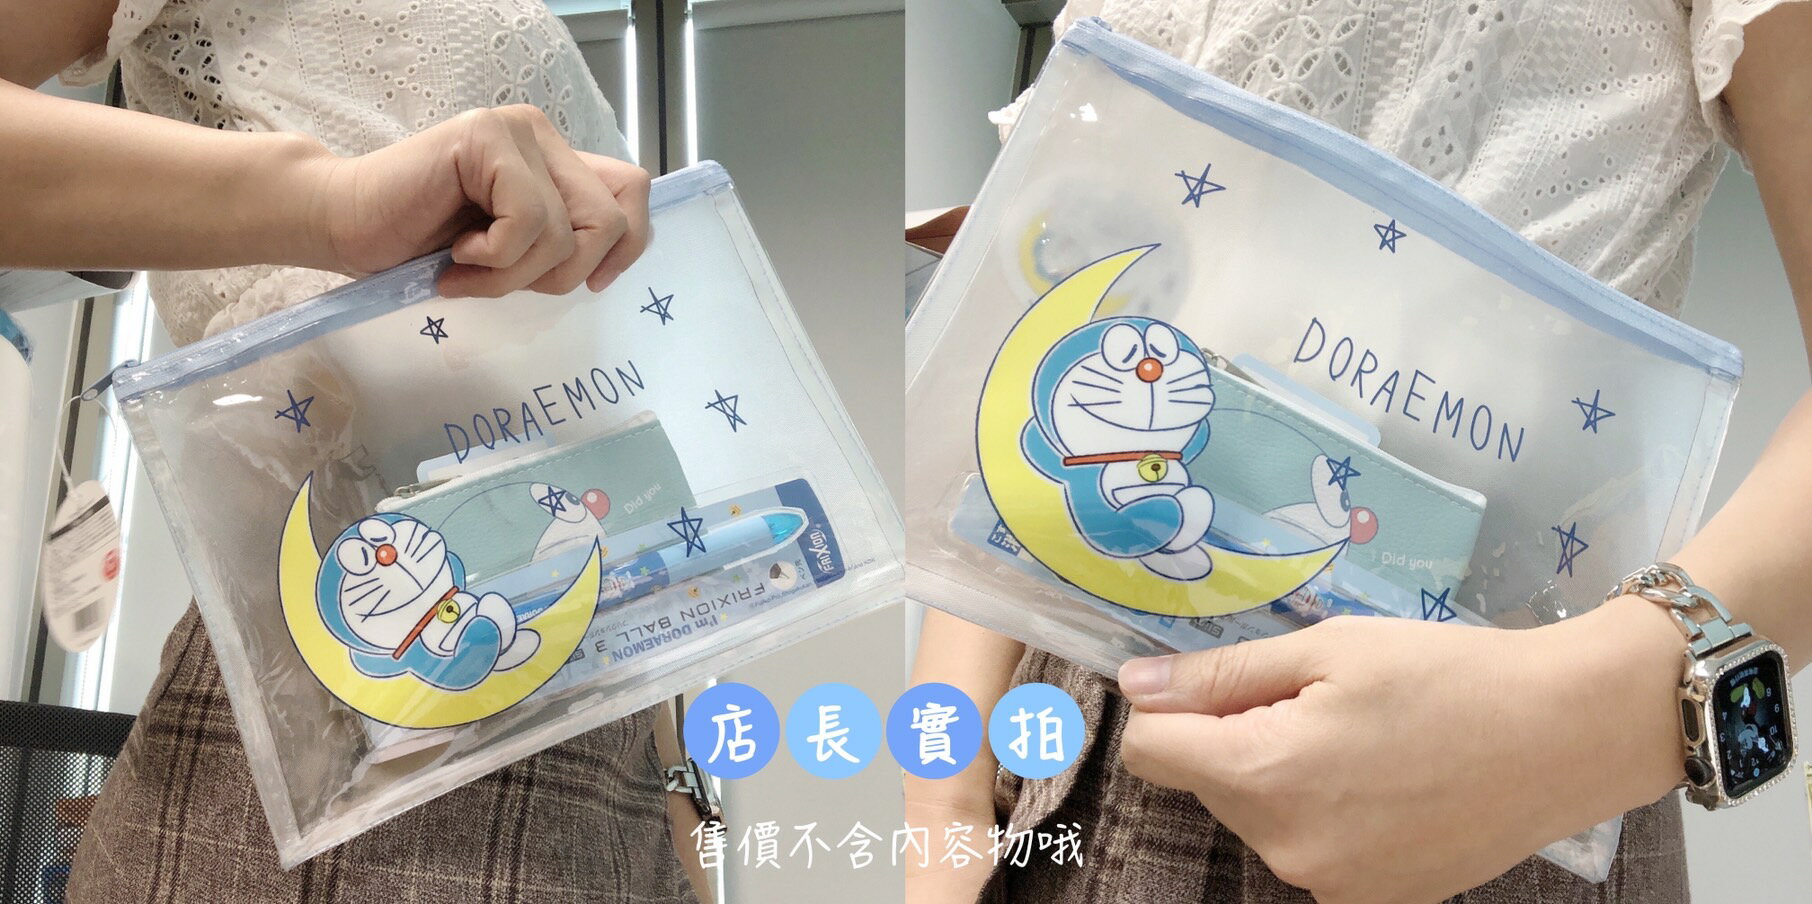 日本代購 現貨 哆啦A夢 A5尺寸資料袋 收納包 化妝包 日本境內版 Doraemon 透明 霧面 拉鍊PVC包